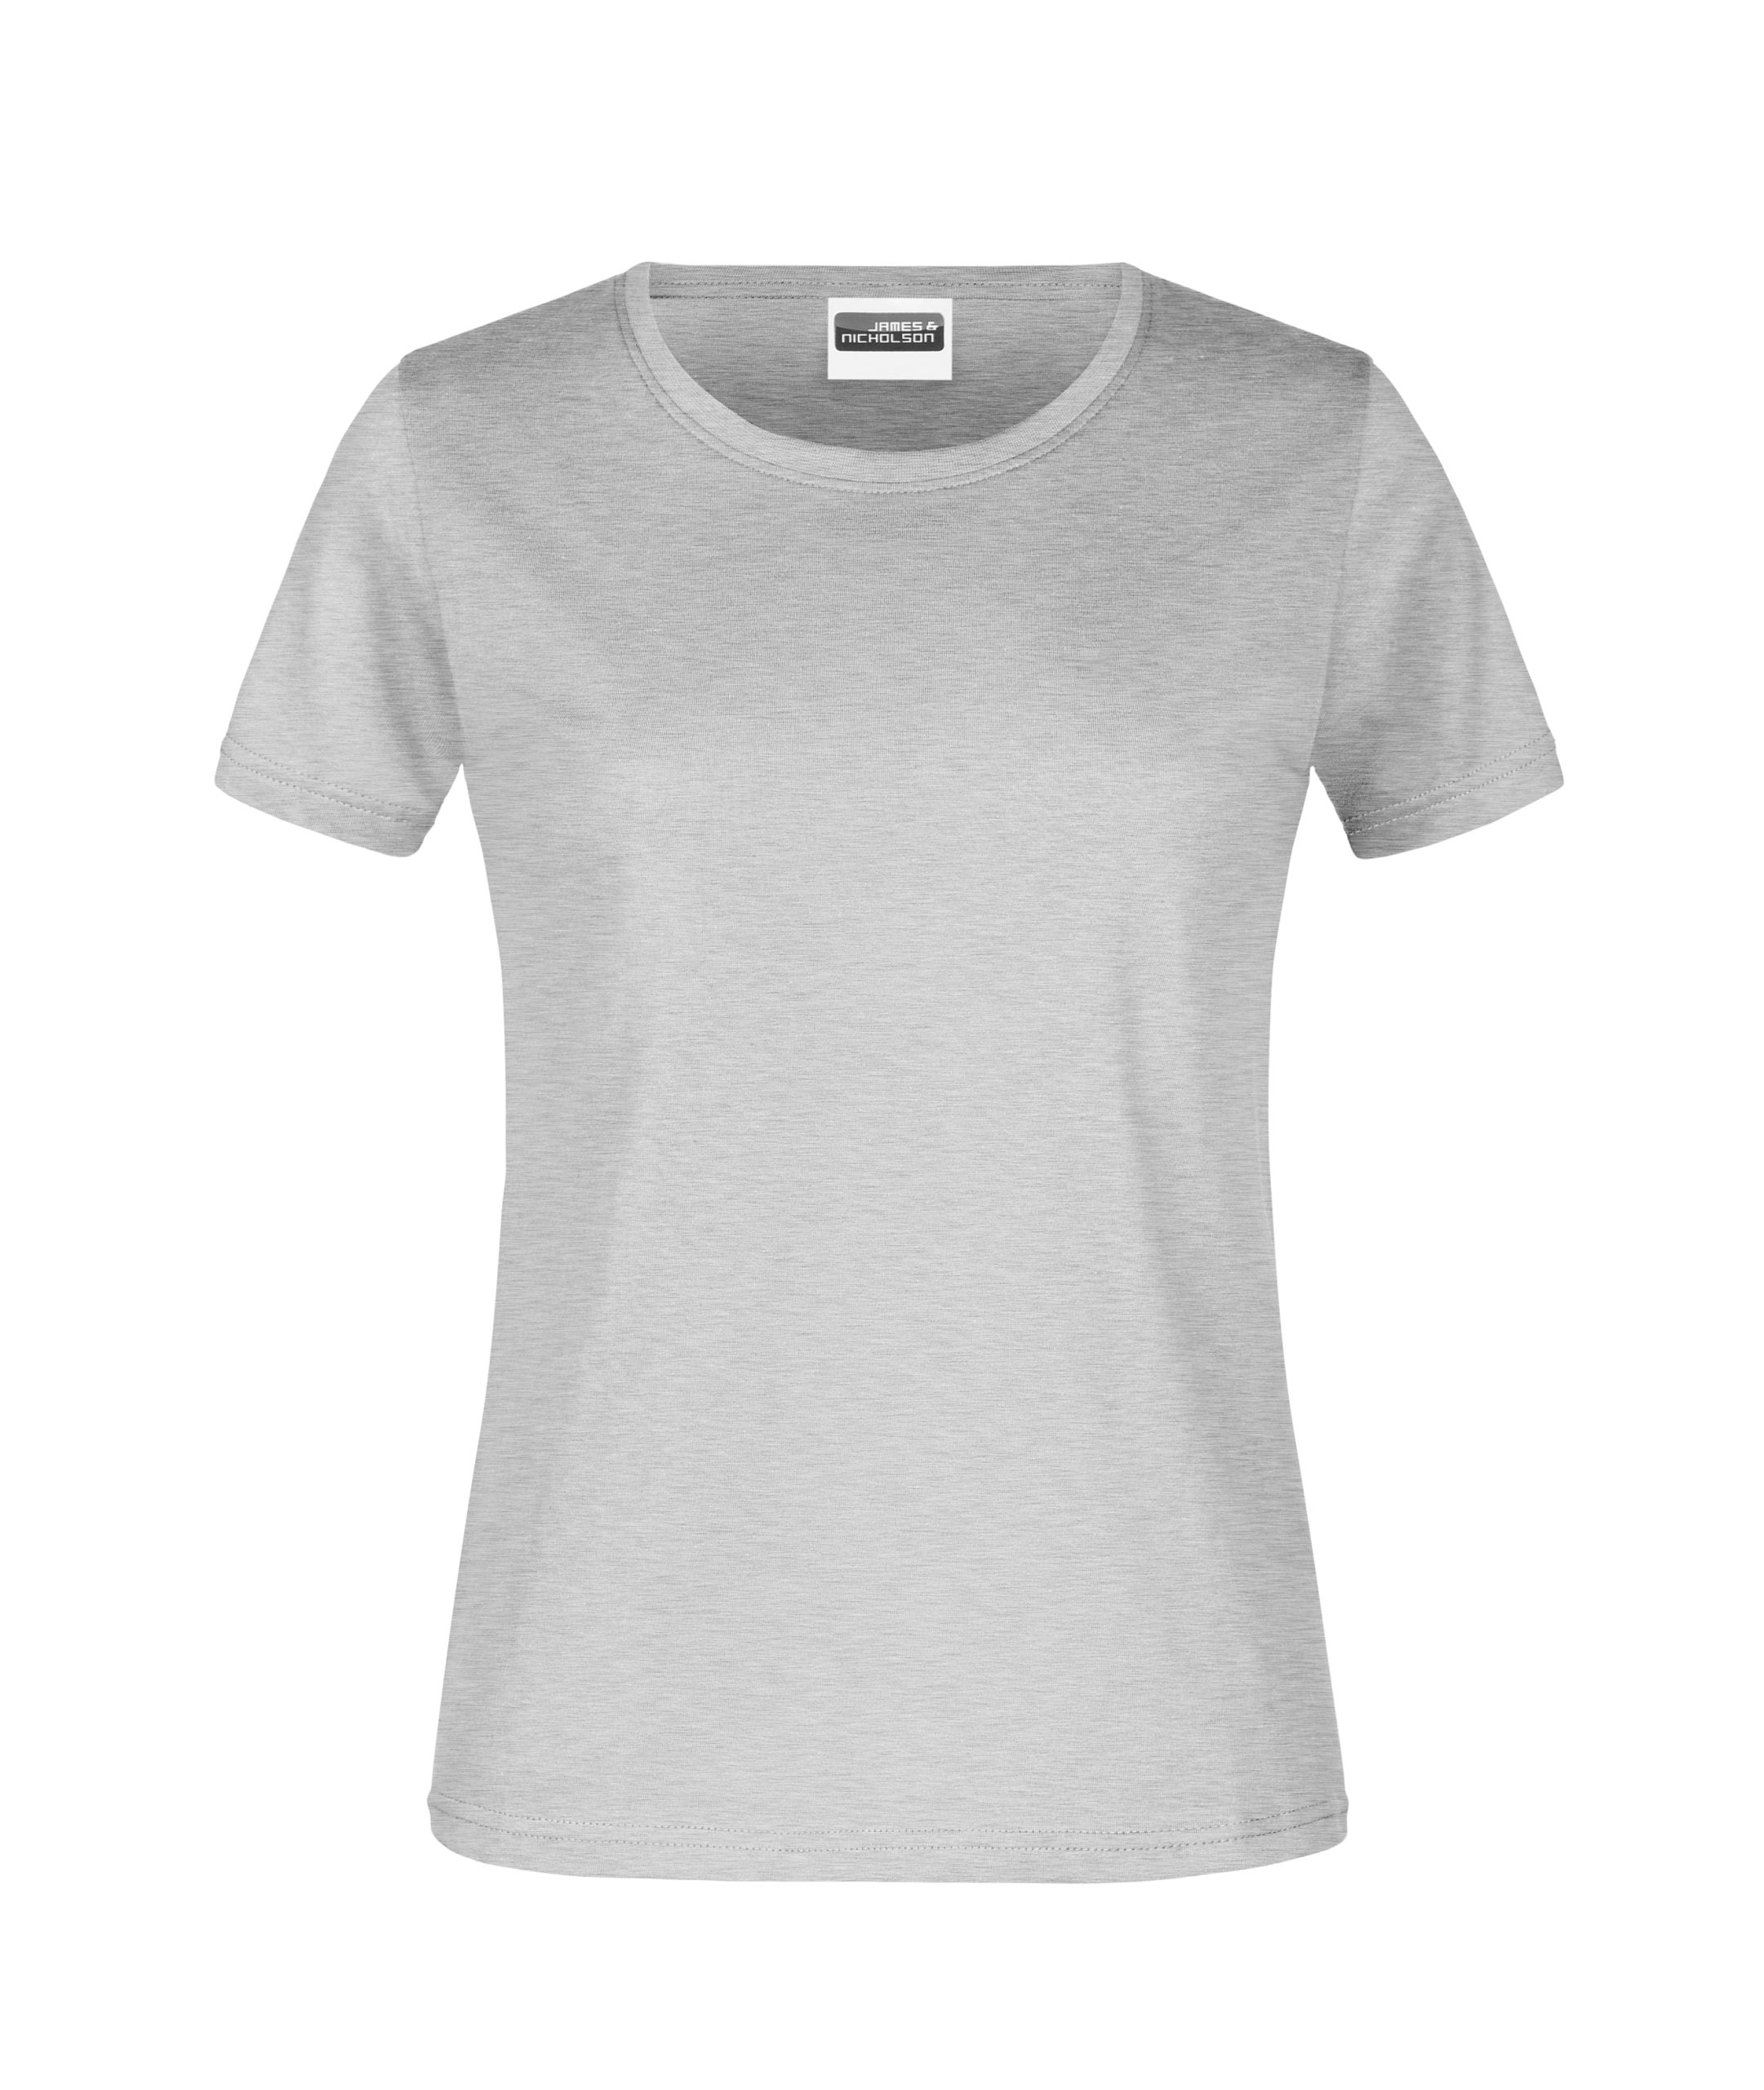 - Beworben gr 180 heather grey Bestens T-Shirt Lady